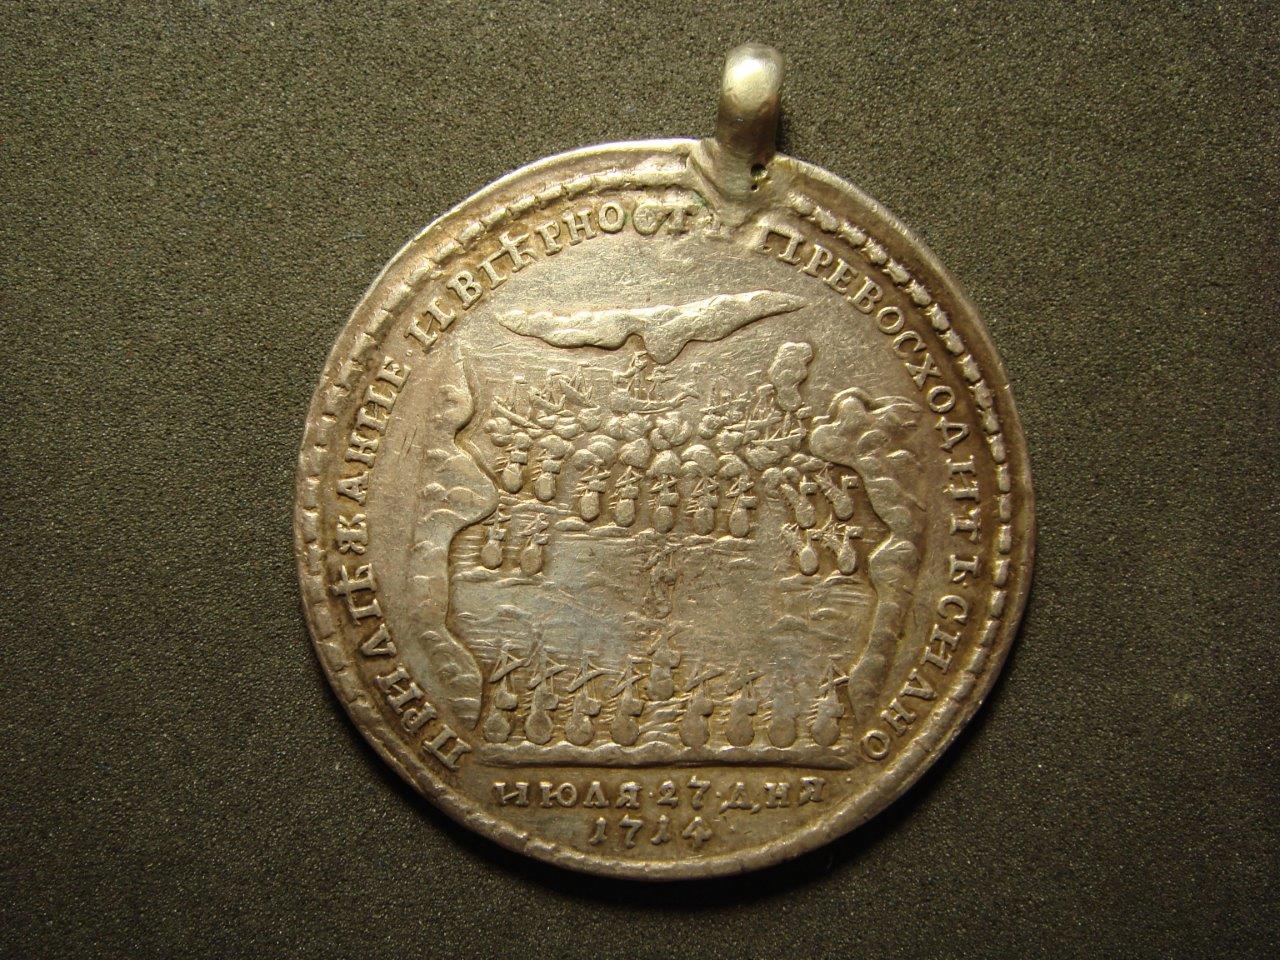 Укажите название изображенного на медали сражения. Медаль Гангутского сражения 1714. Медаль Петра 1 за Гангутское сражение. Медаль за Морское сражение при Гангуте. Медаль за Морское сражение при Гангуте 27 июля 1714 г.